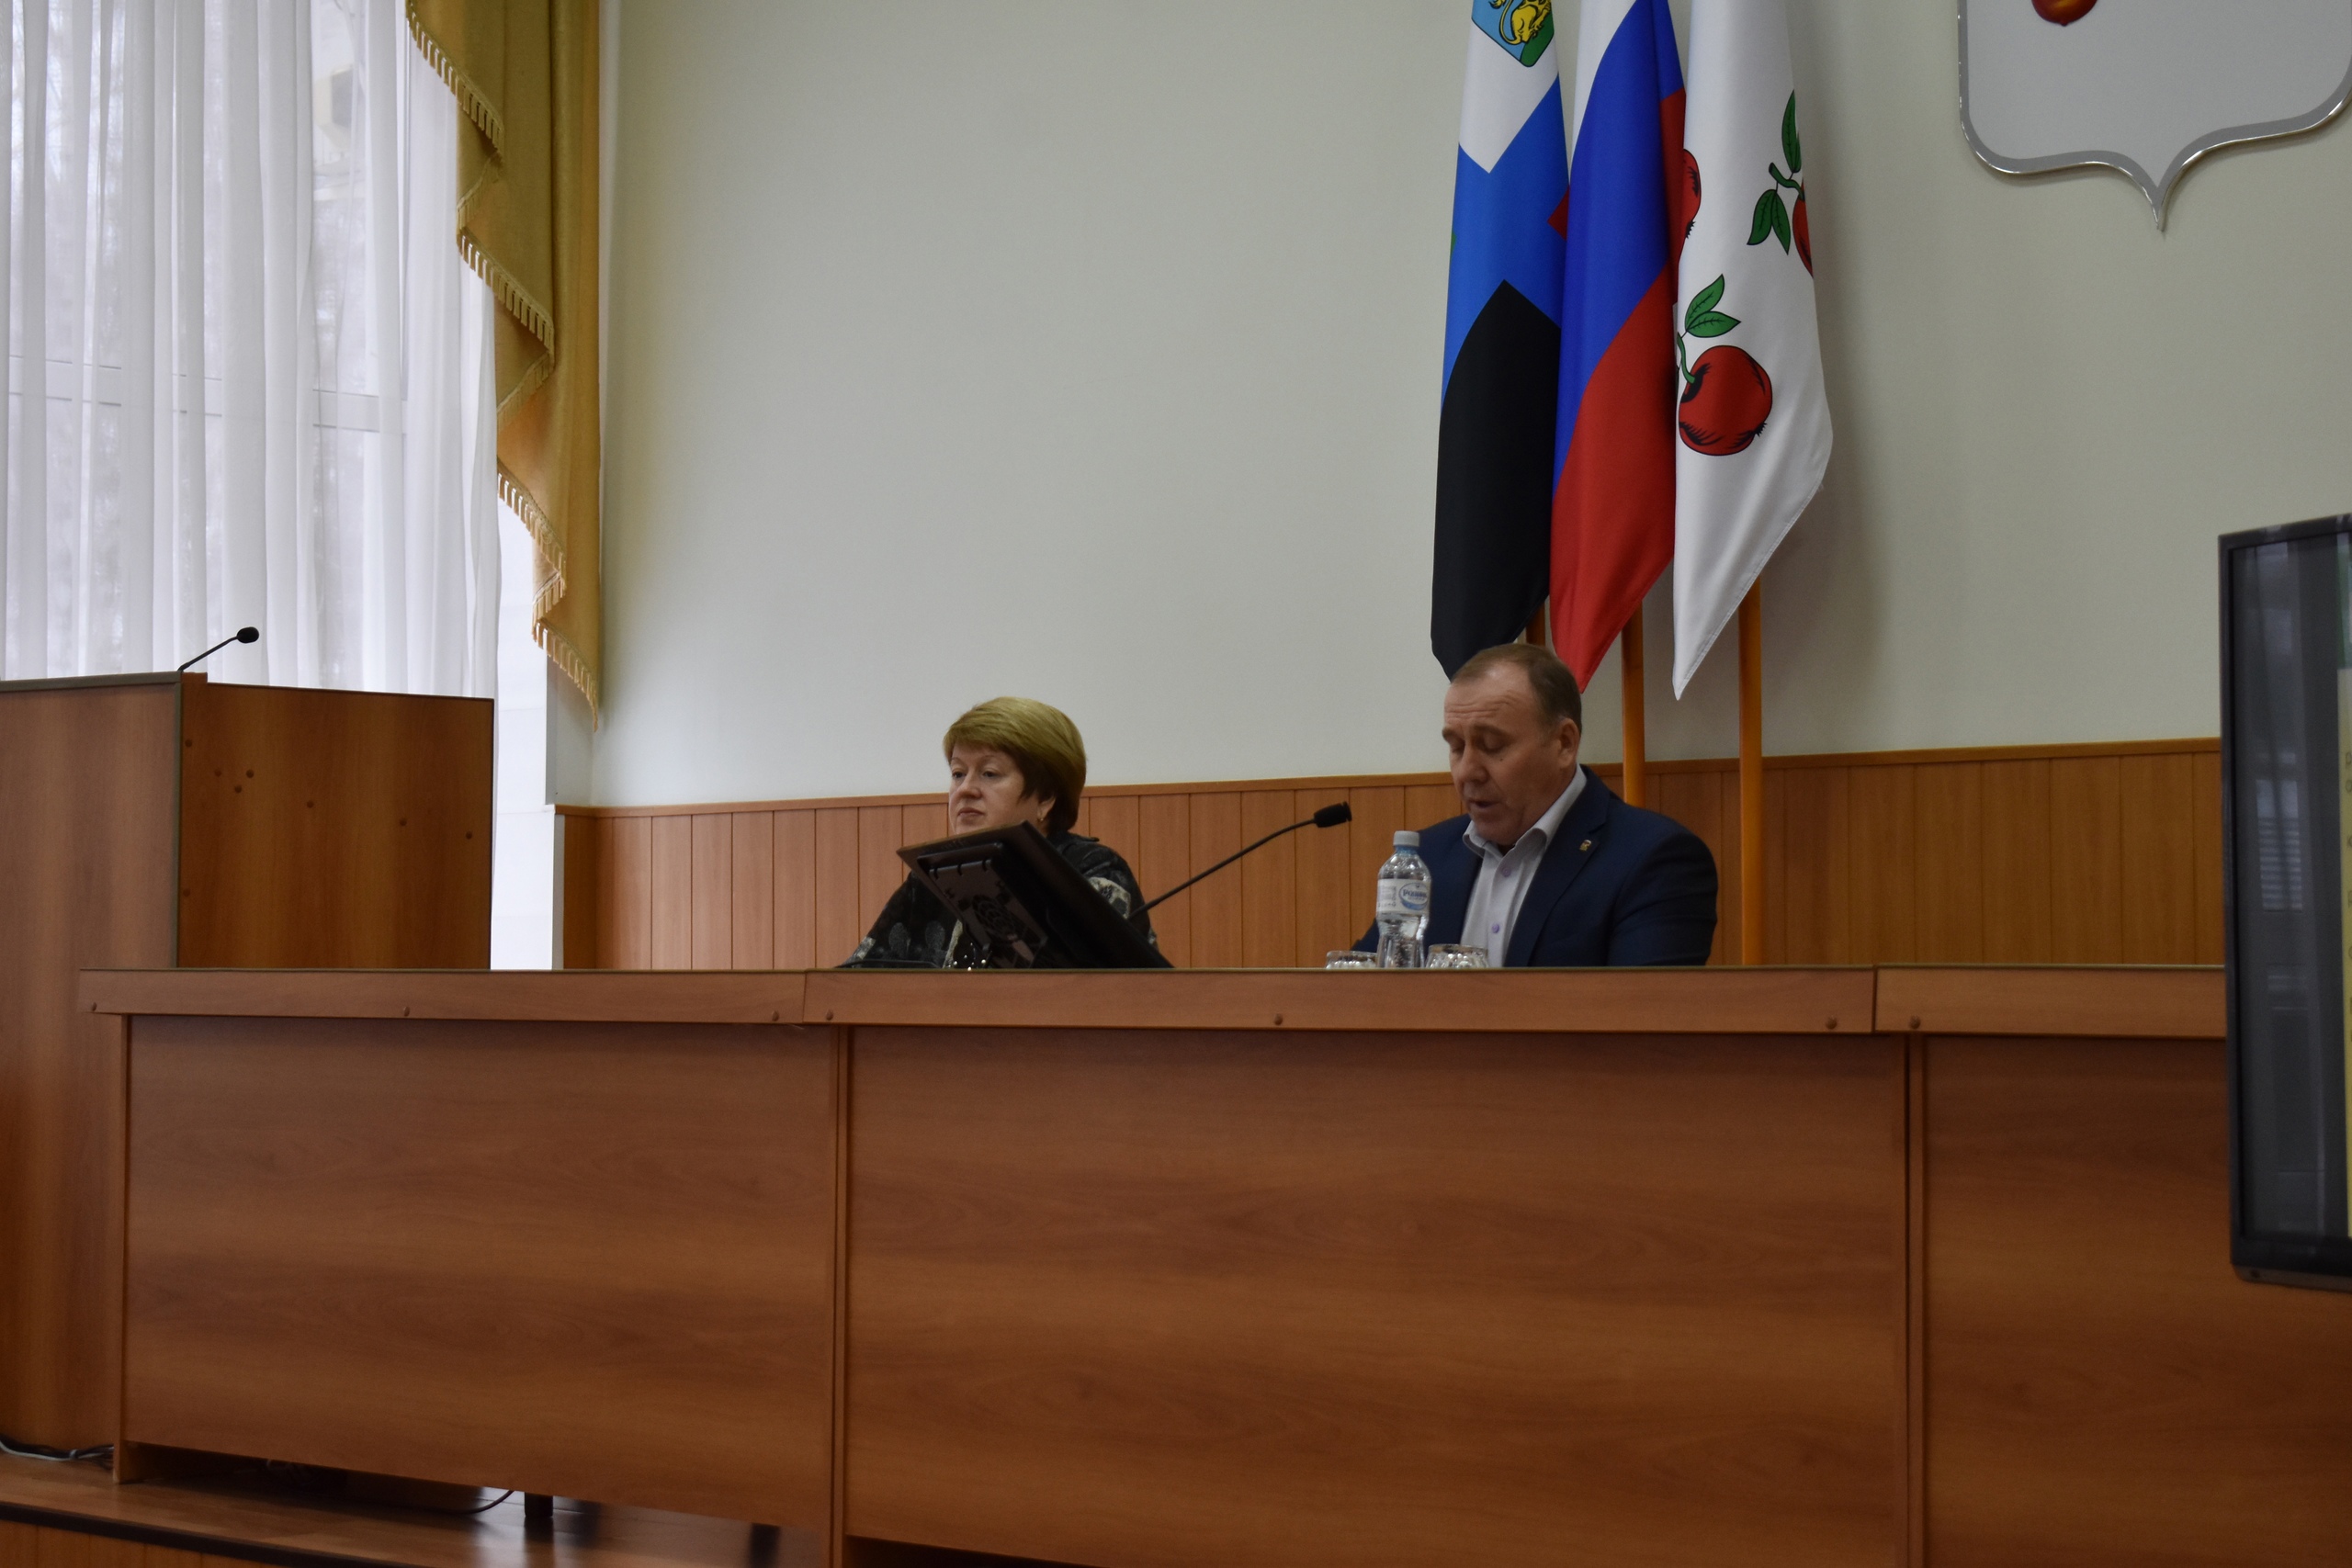 Сегодня состоялись публичные слушания по проекту бюджета муниципального района «Корочанский район» (районному бюджету) на 2023 год и плановый период 2024-2025 годов.